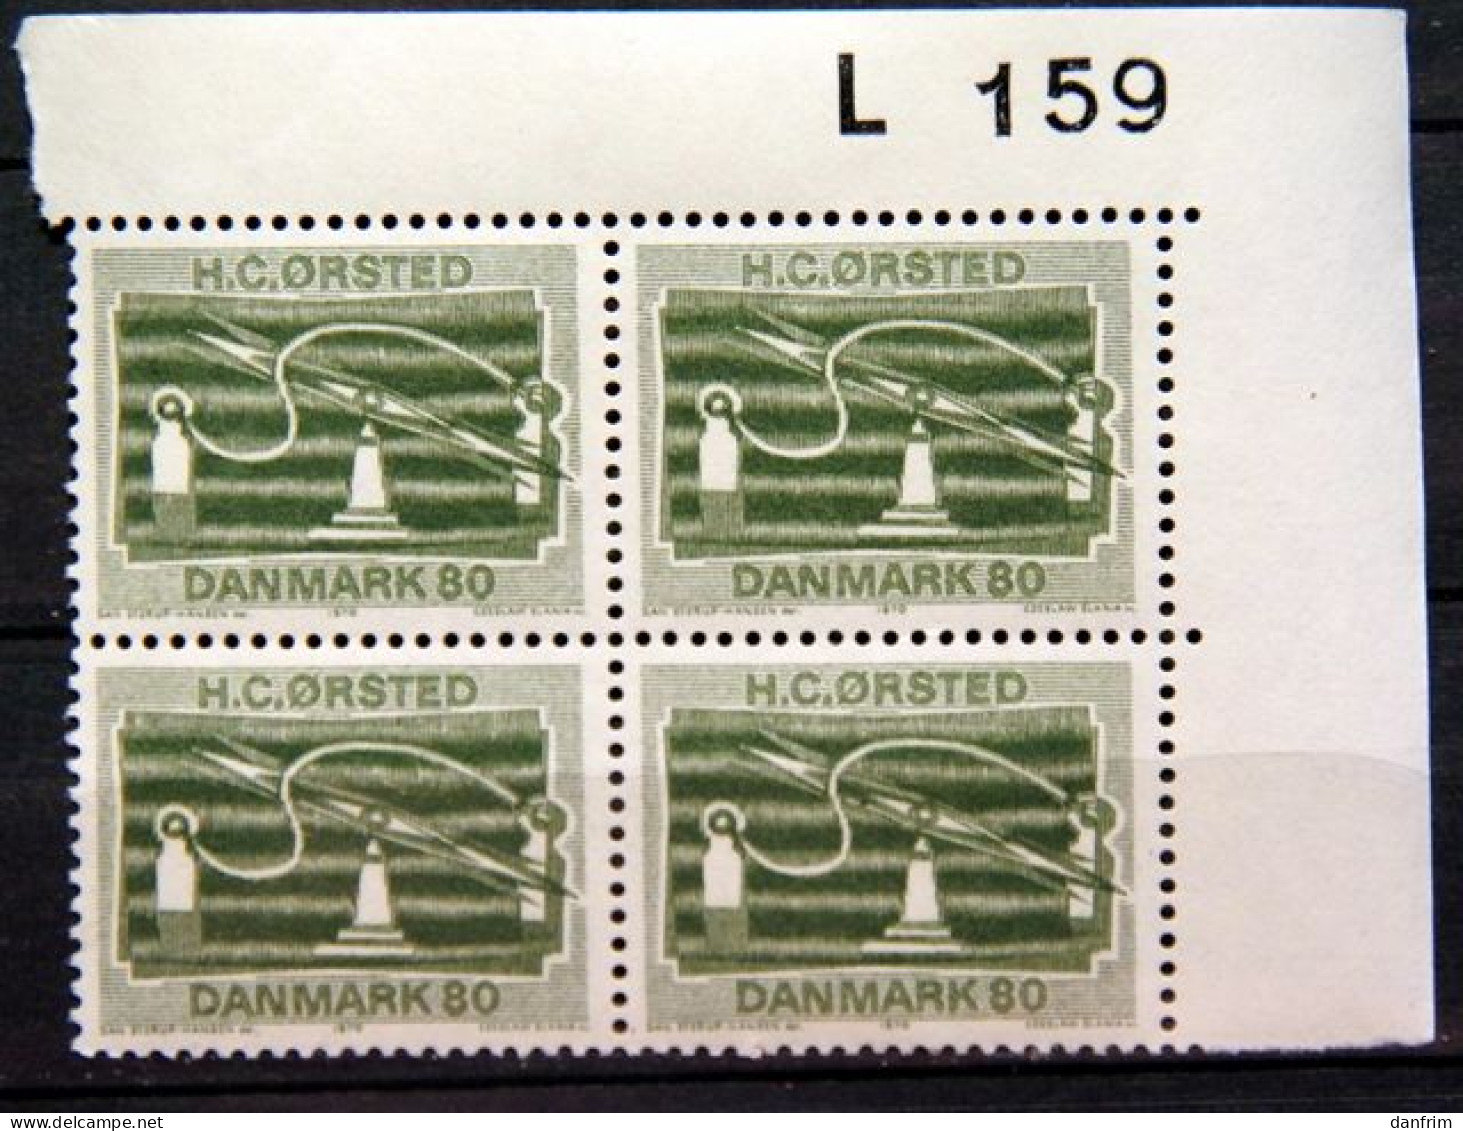 Denmark 1970 H.C. ØRSTEDS   Minr.498   MNH  (**)   ( Lot Ks 433  ) - Unused Stamps